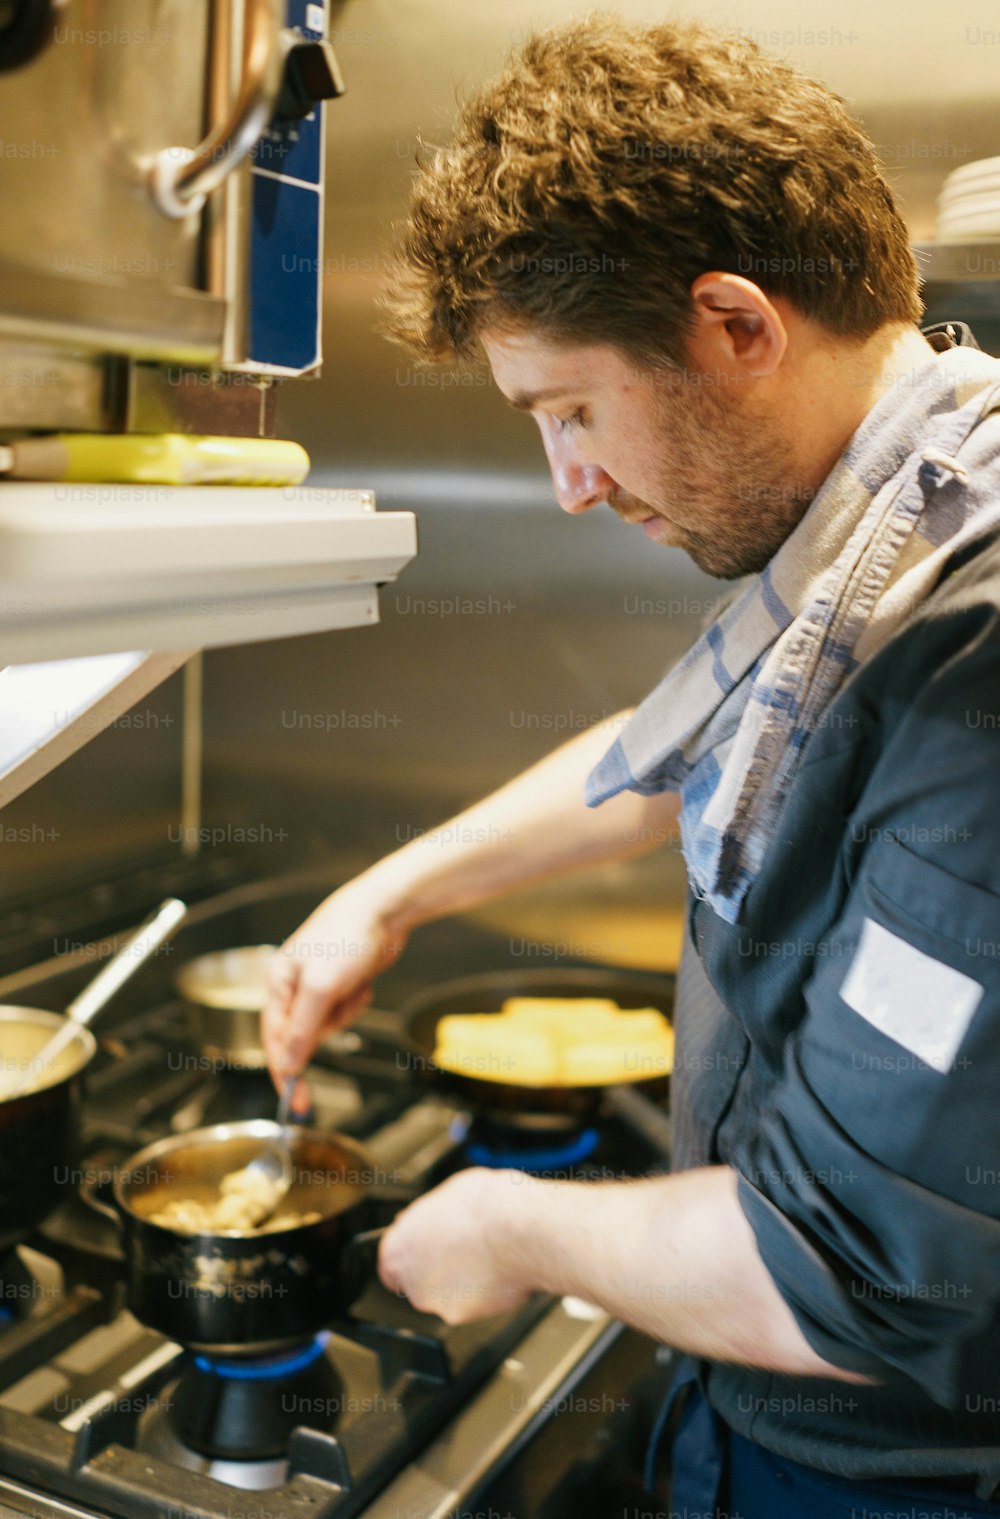 Un hombre cocinando en una estufa en una cocina